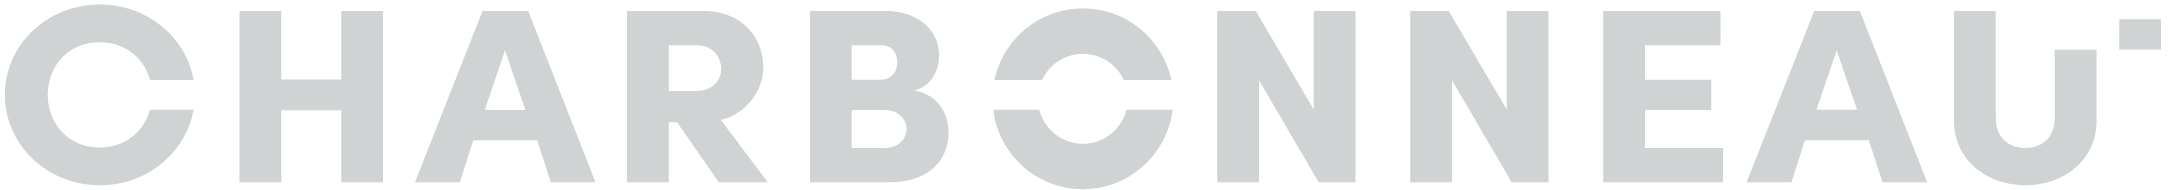 Charbonneau plomberie logo